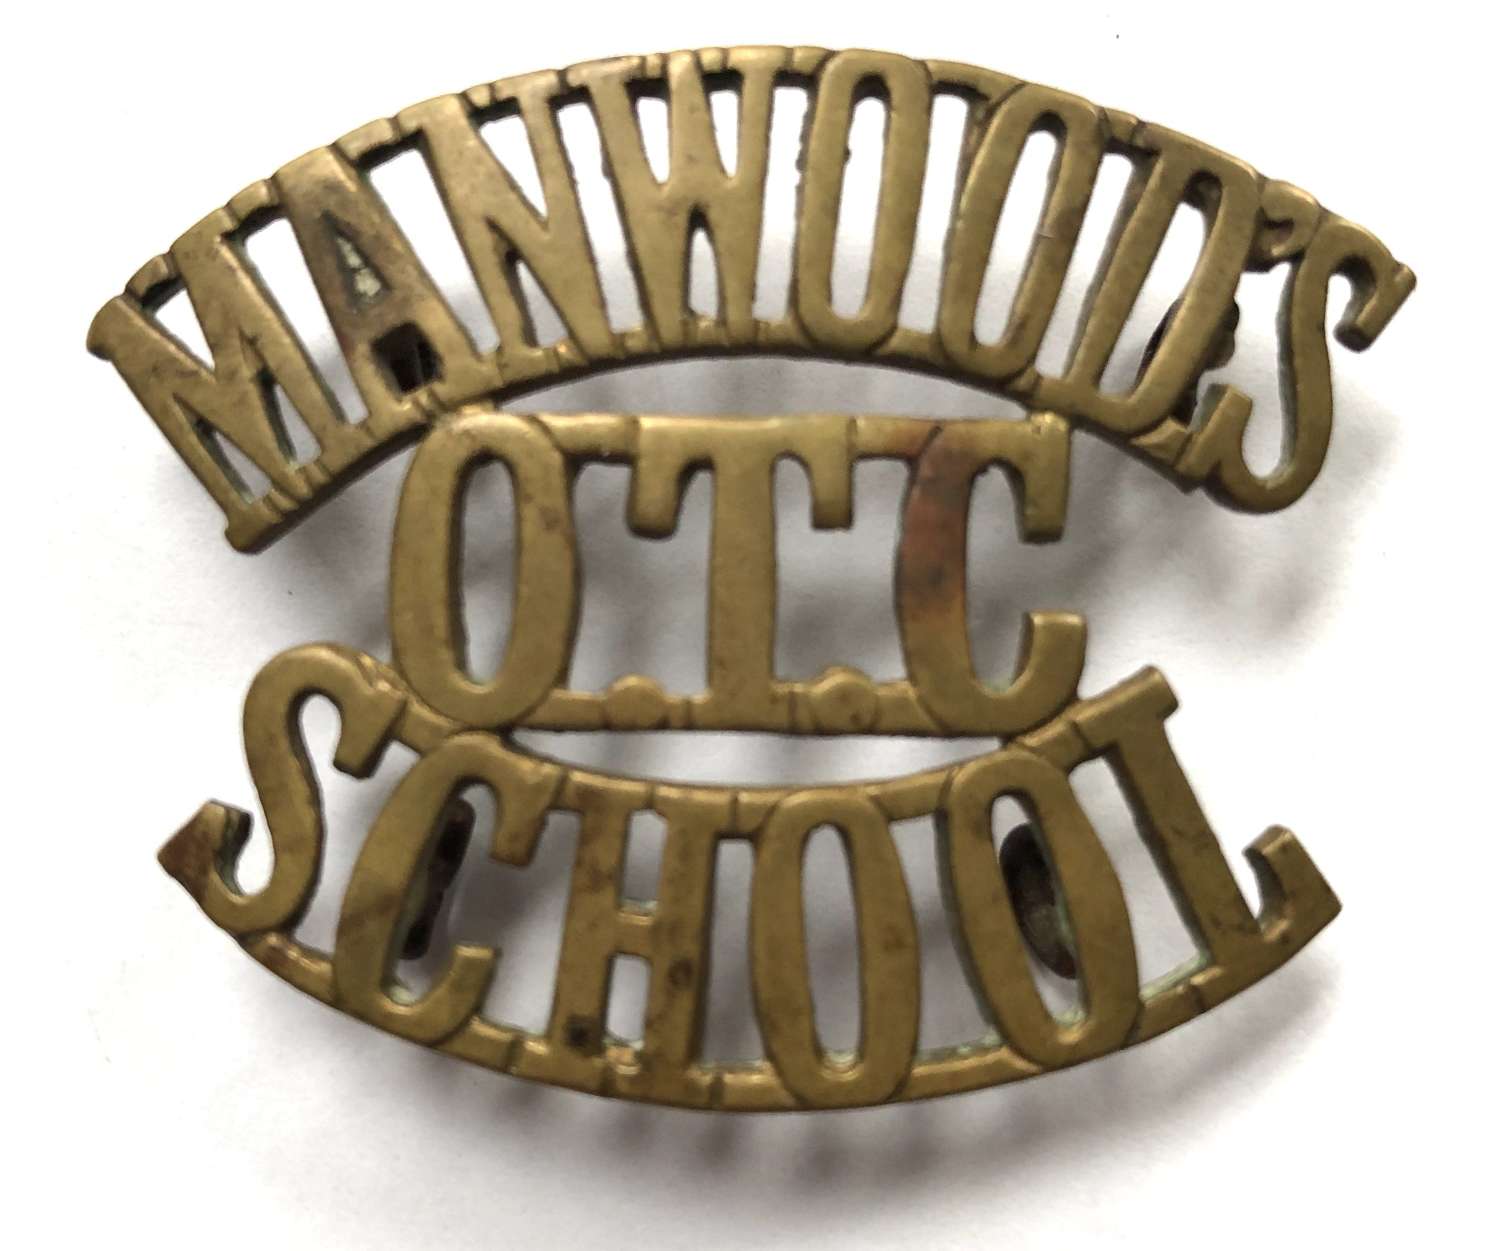 MANWOODS / OTC / SCHOOL shoulder title c1908-40